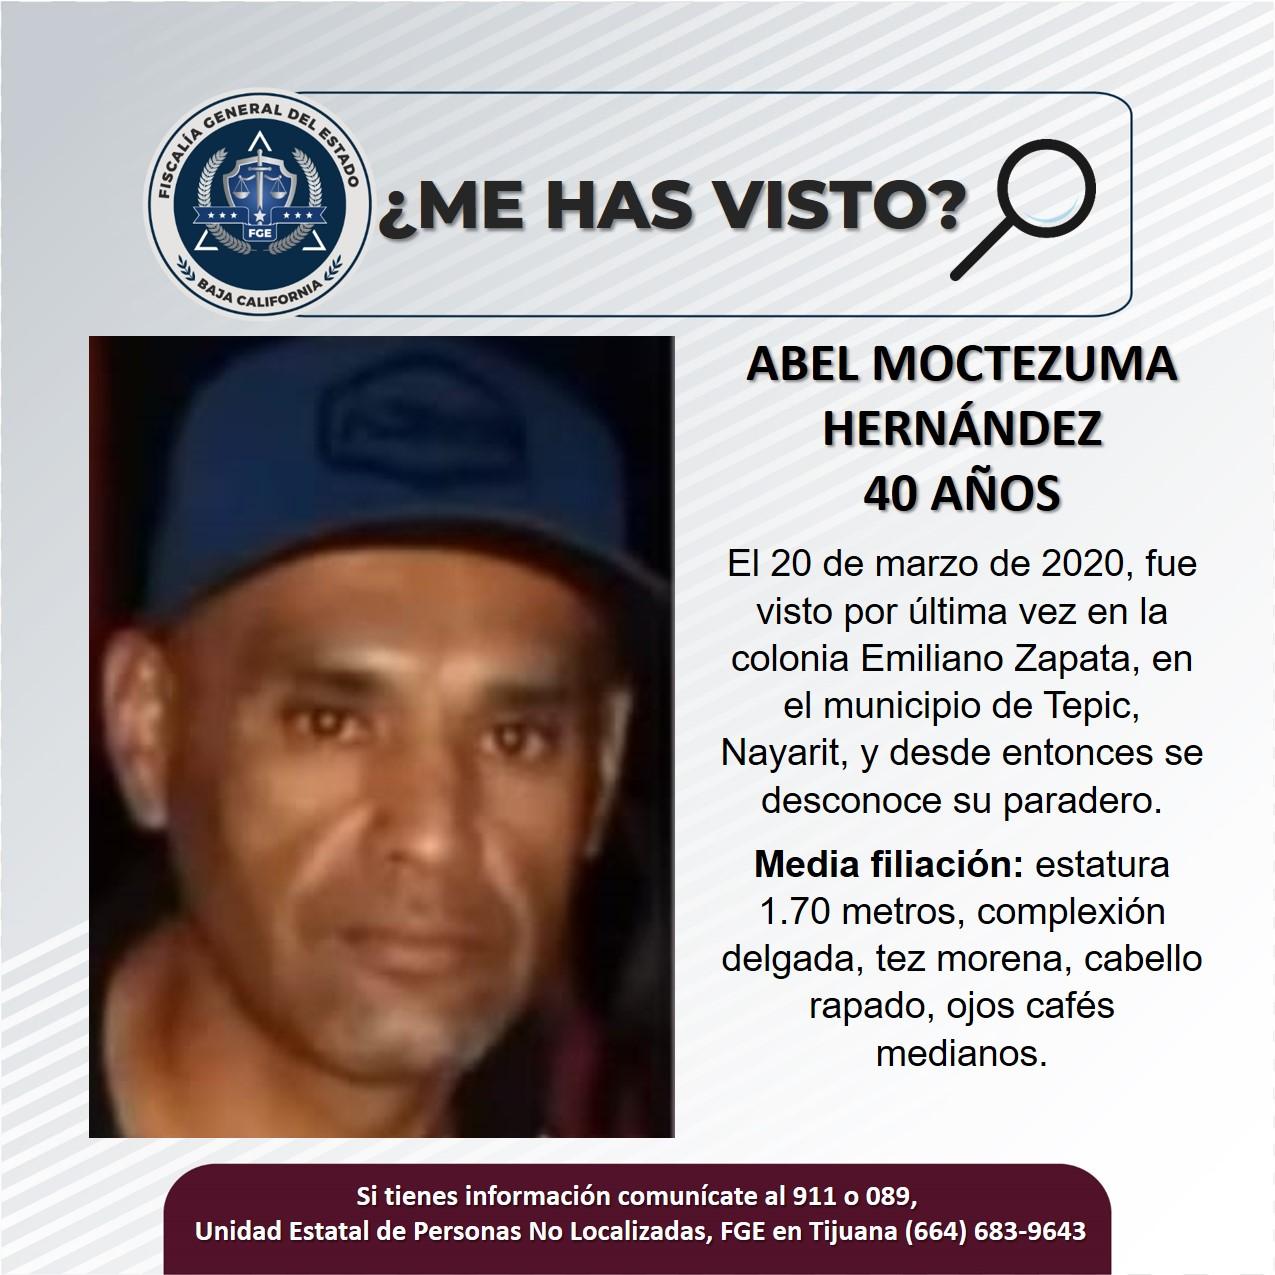 Servicio social: Se busca a Abel Moctezuma Hernández de 40 años de edad